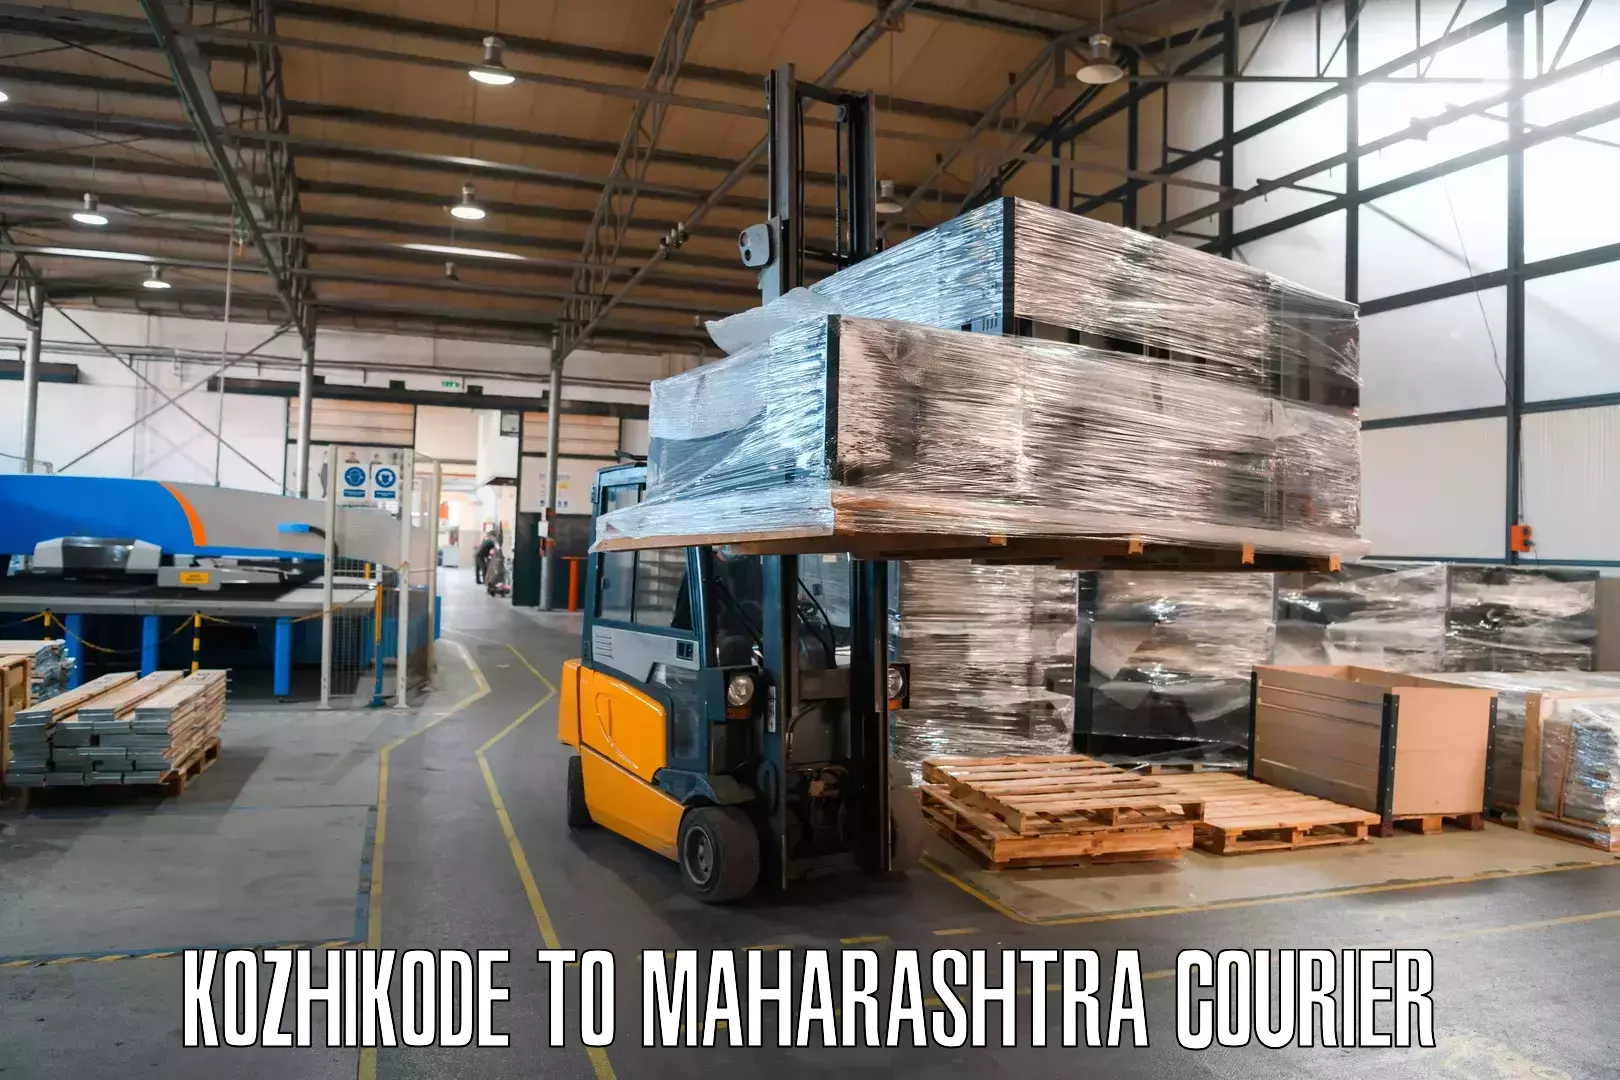 Regular parcel service Kozhikode to IIIT Pune